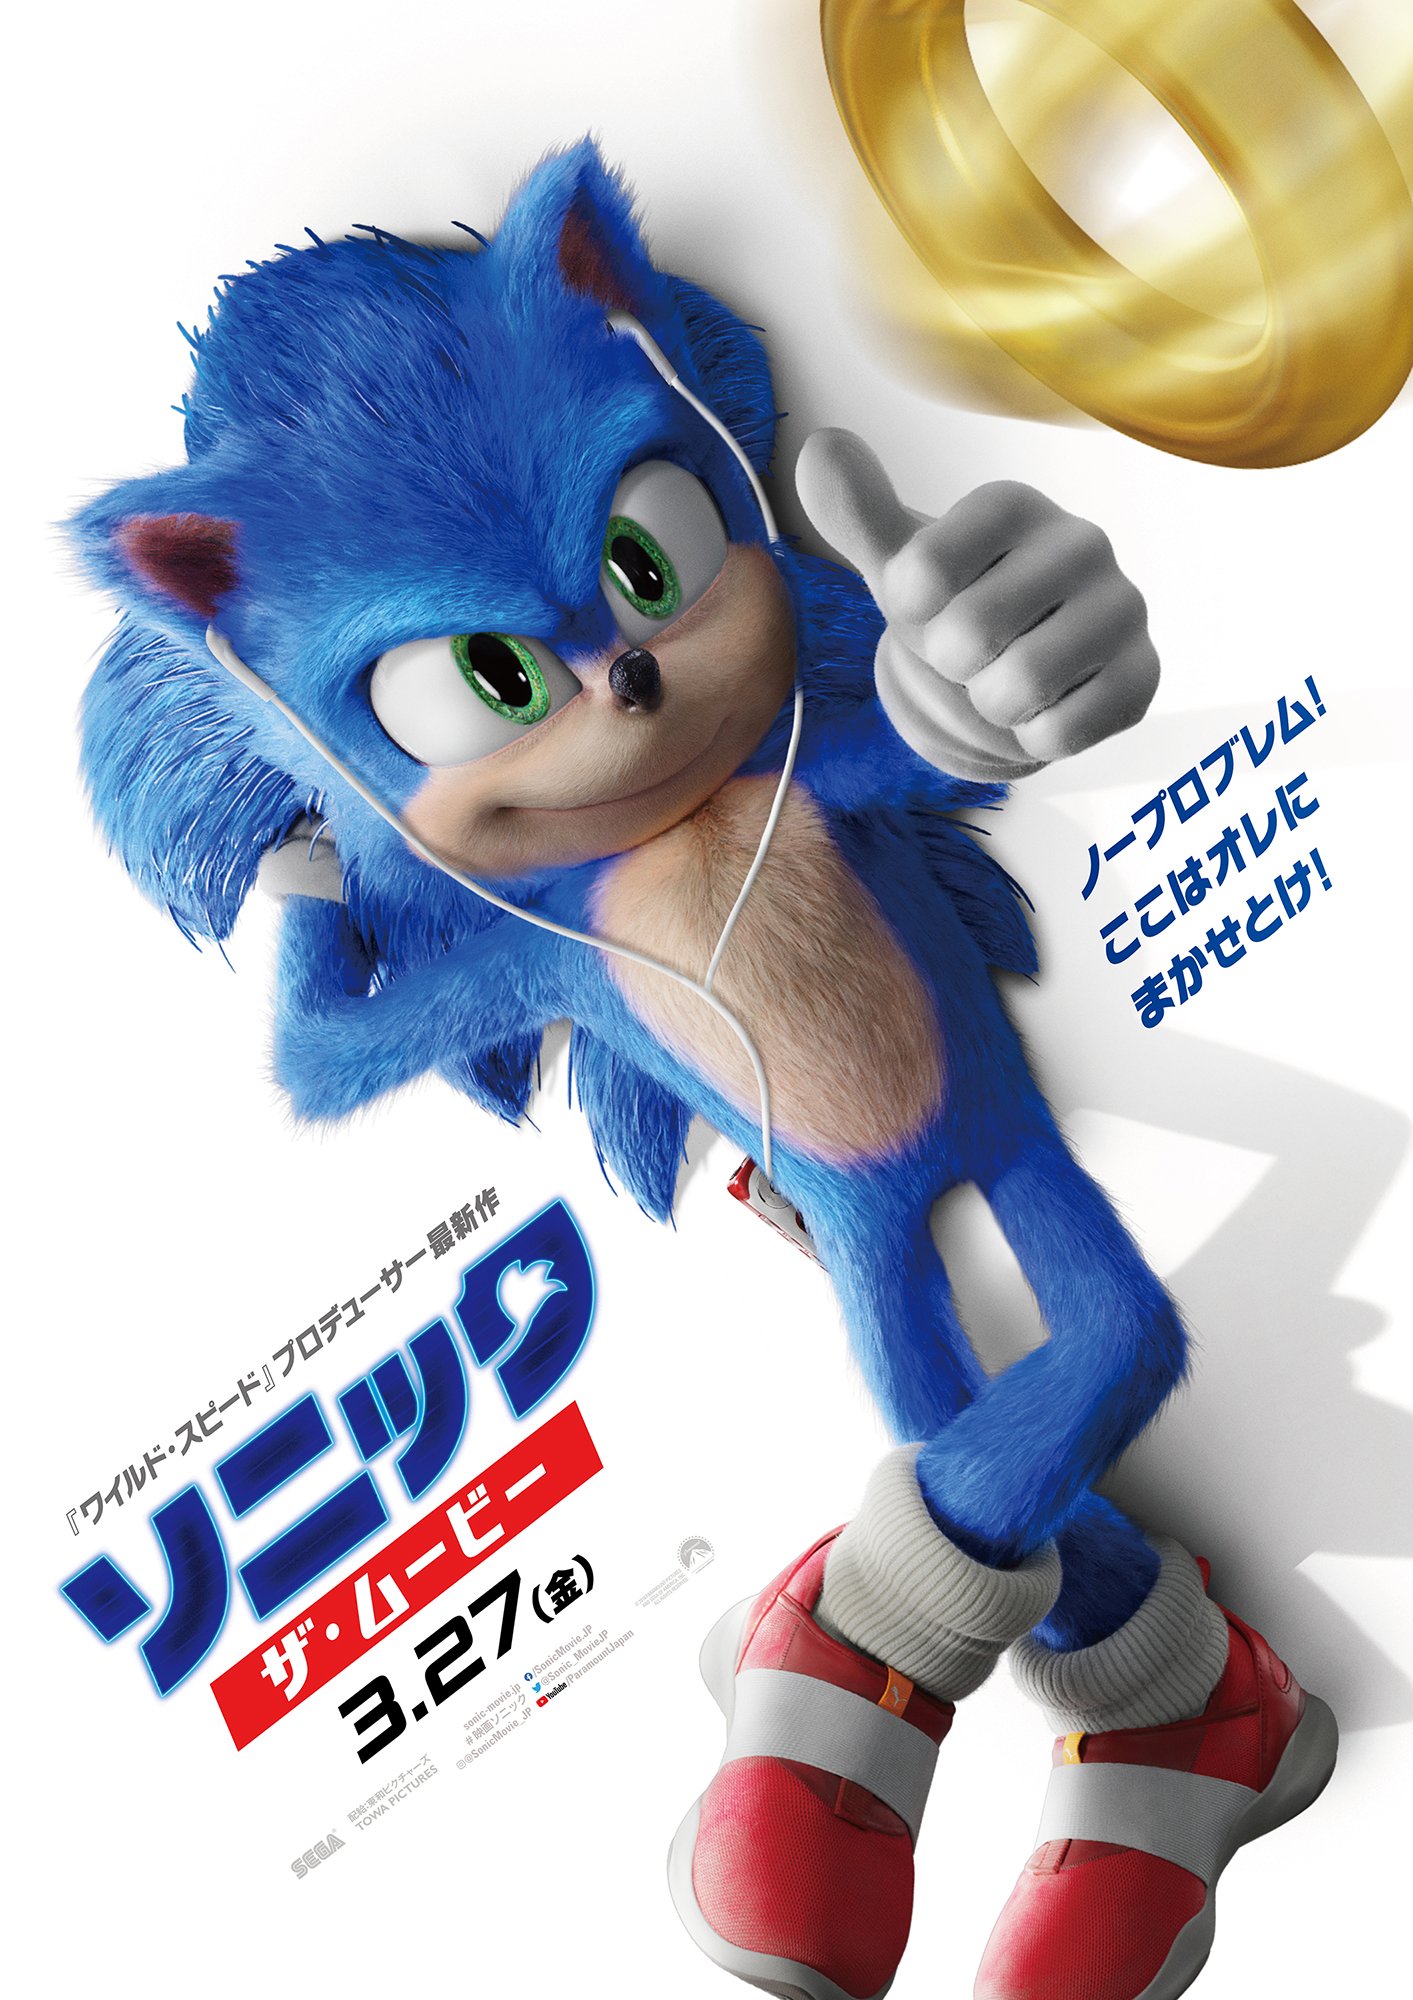 Sonic Movie Pose  Assistir filmes gratis dublado, Assistir filmes grátis,  Personagens de anime